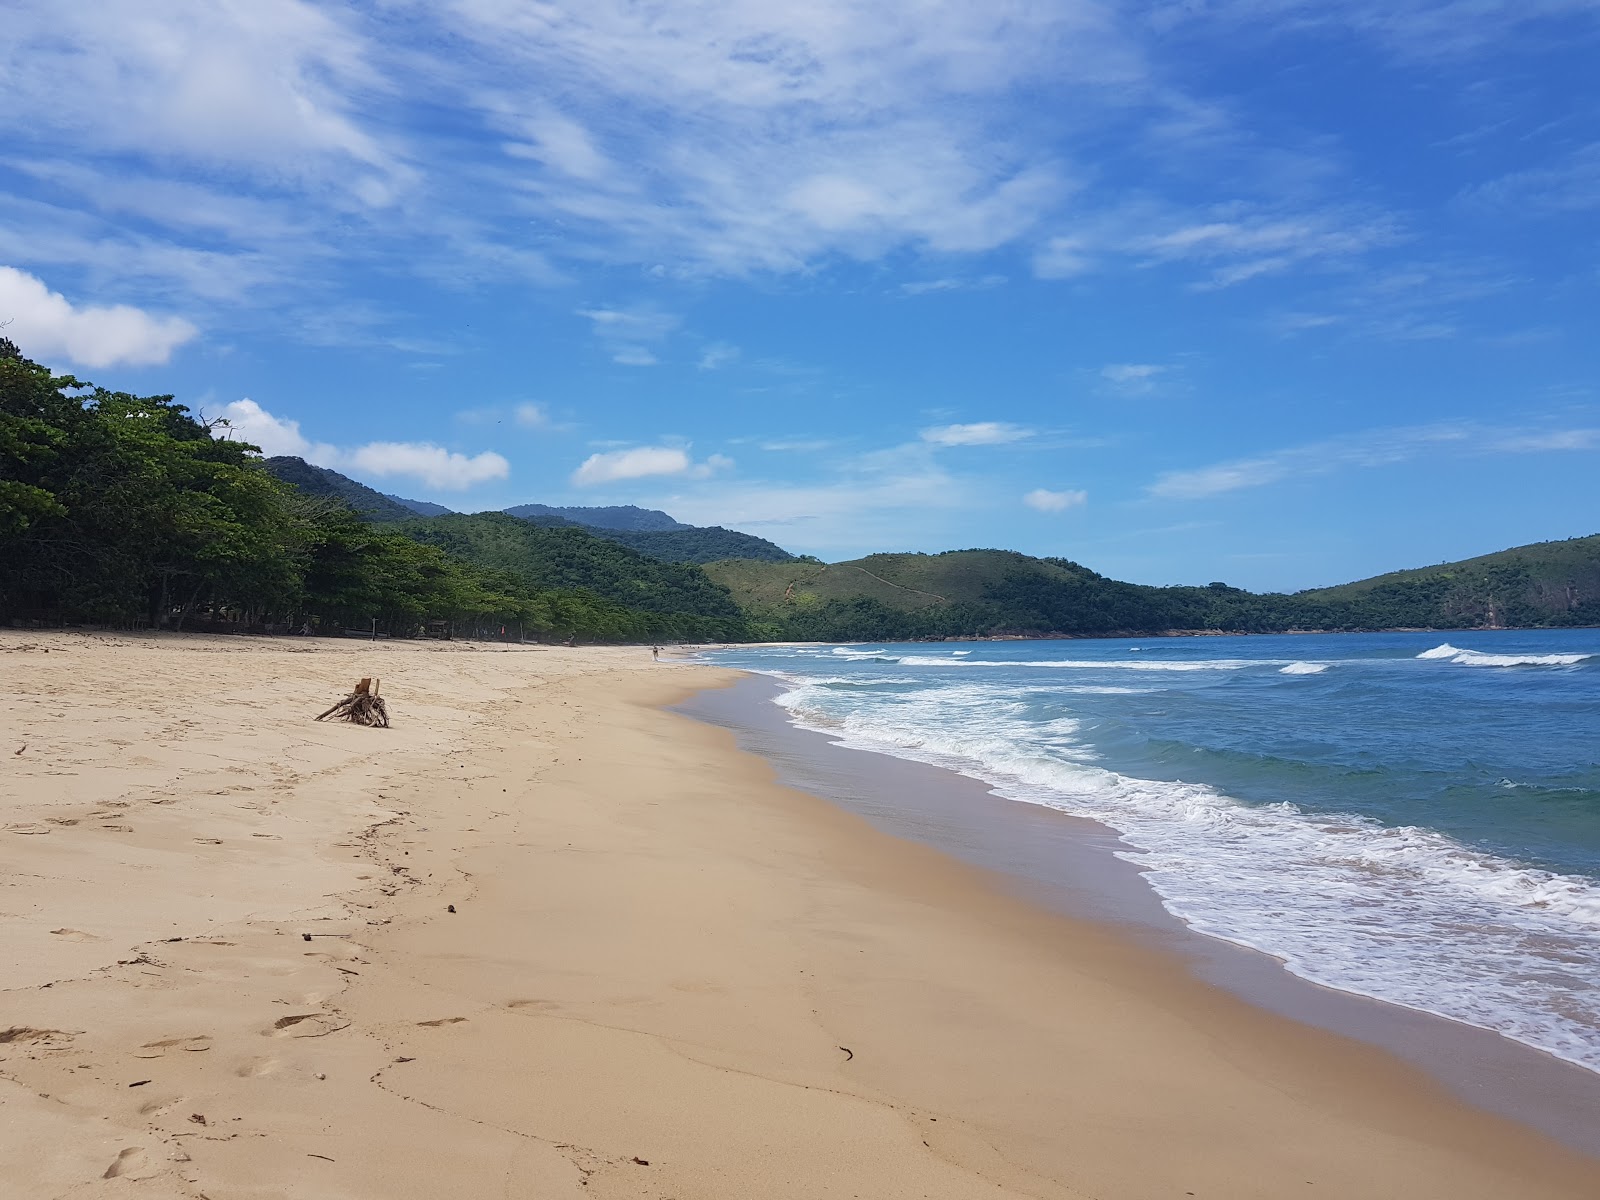 Foto af Praia do Sono - populært sted blandt afslapningskendere